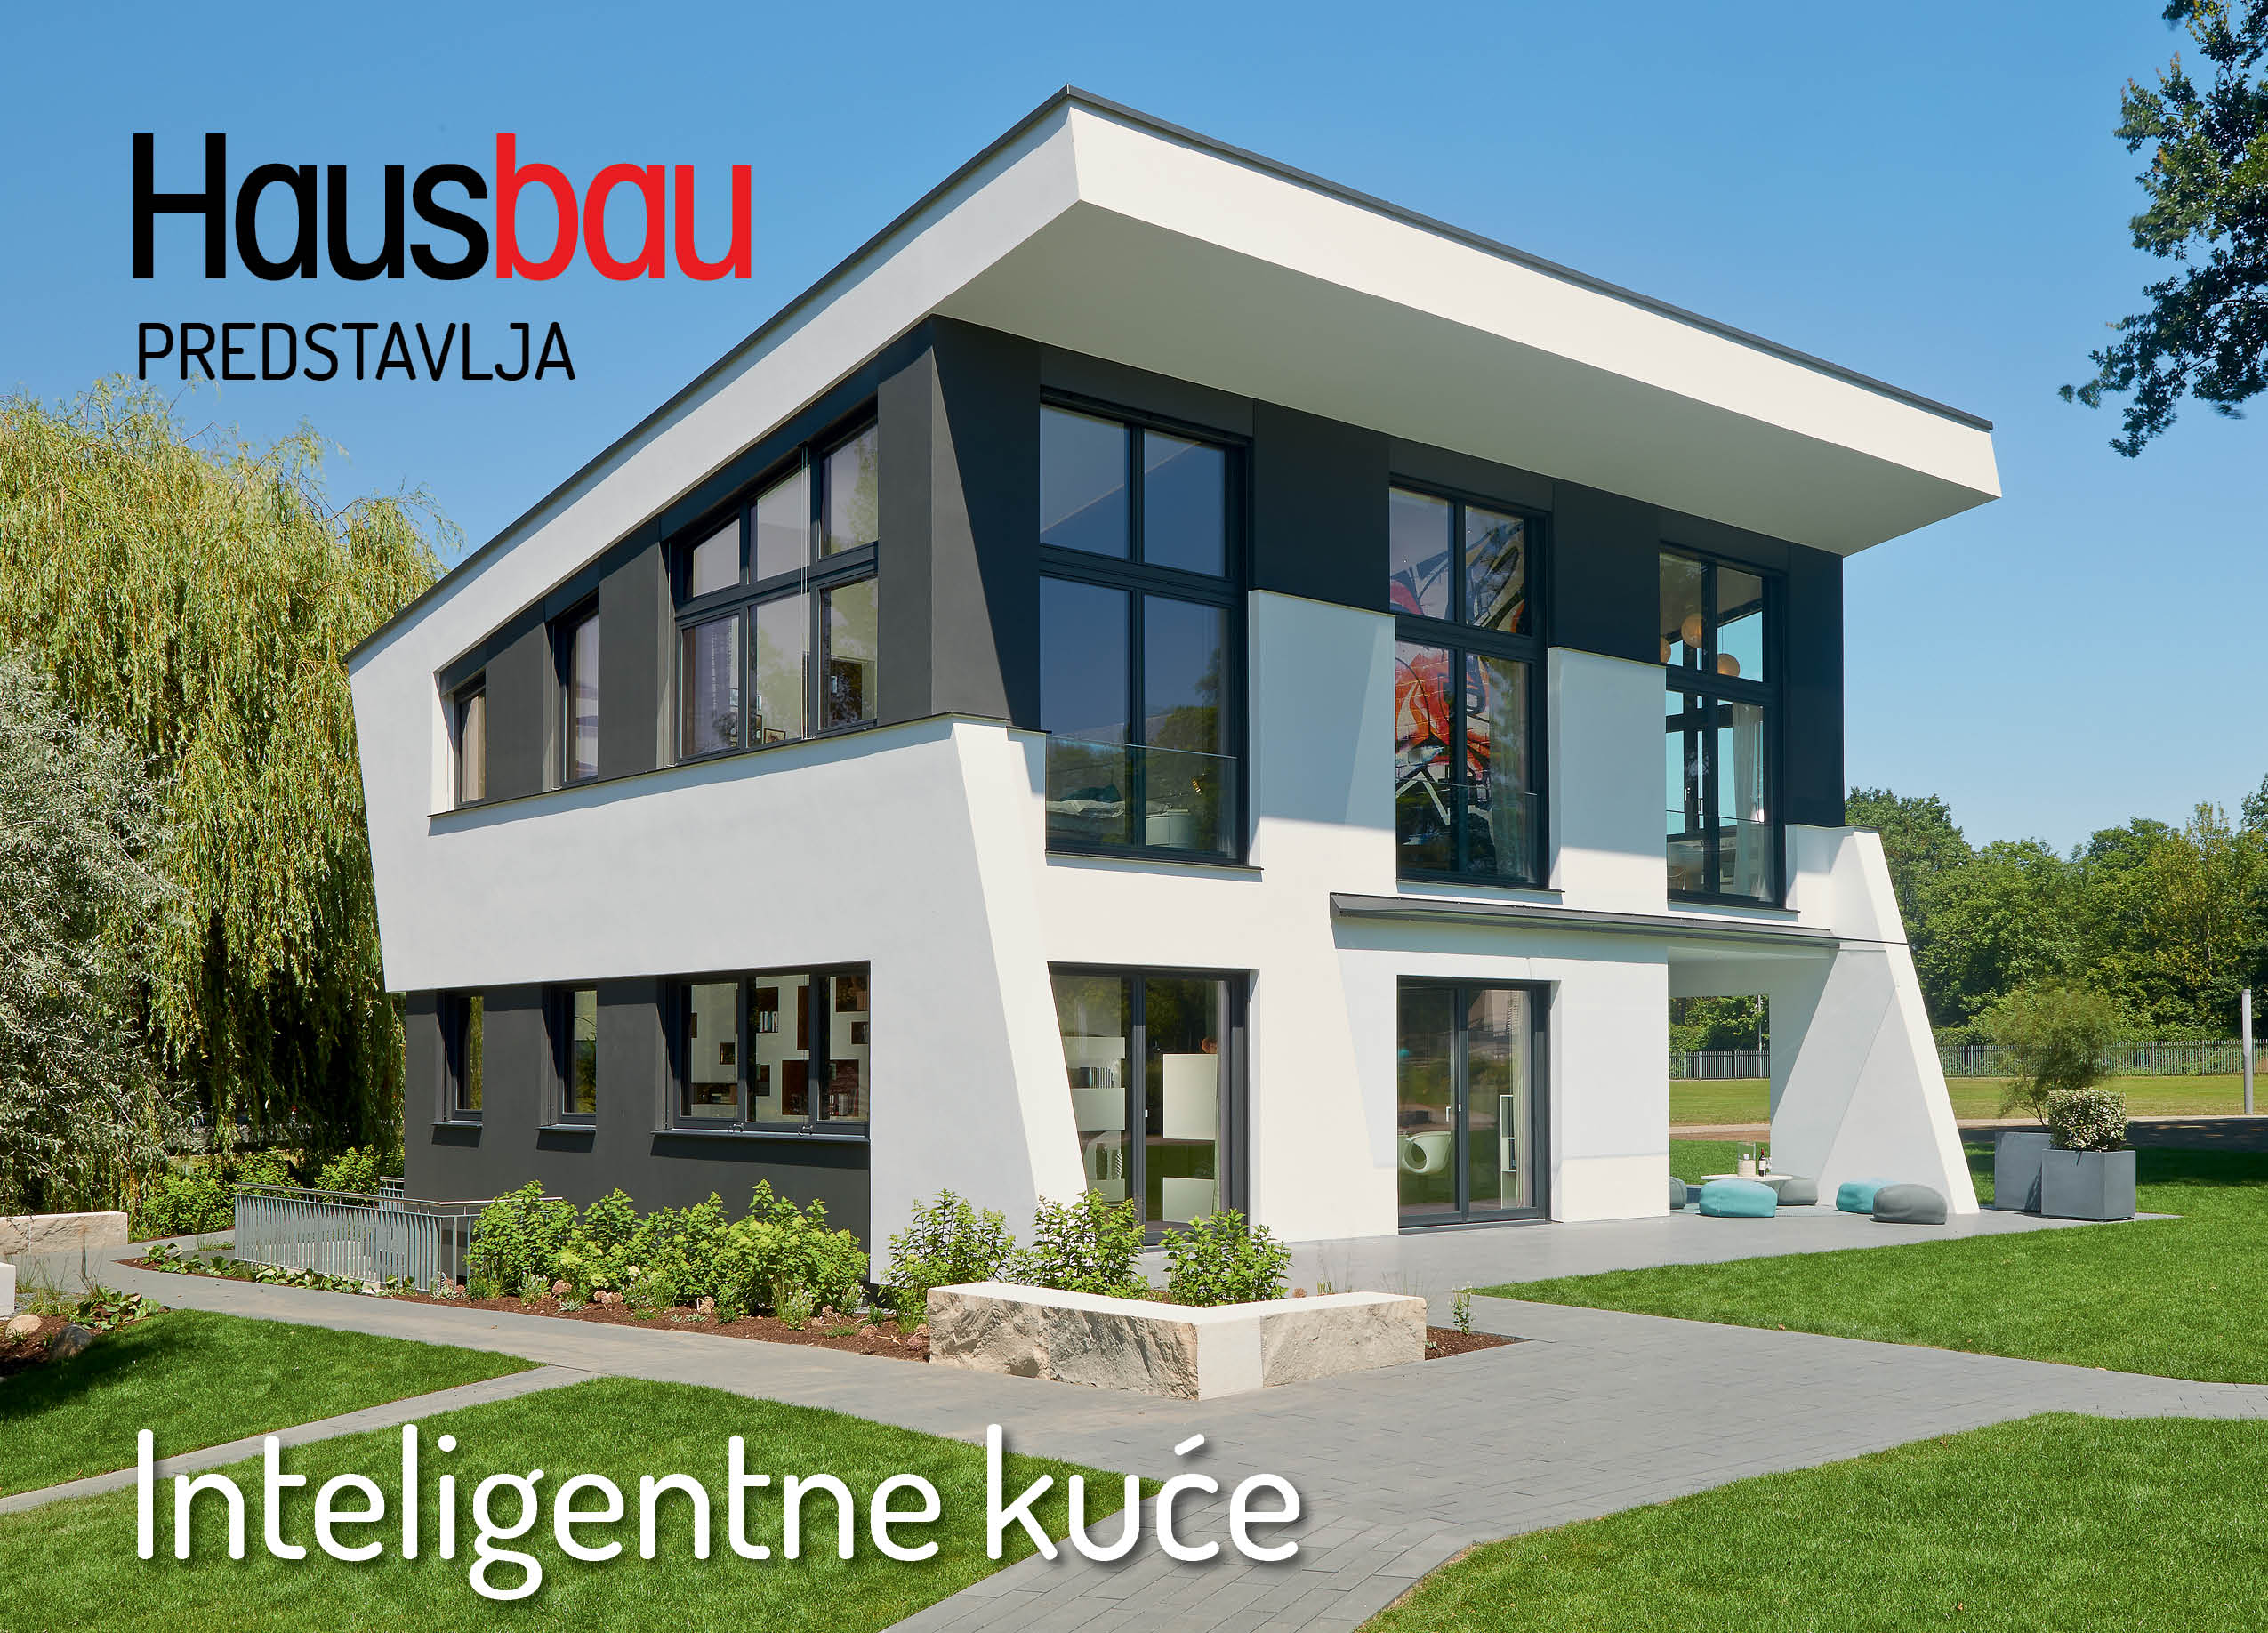 Hausbau predstavlja: Inteligentne umrežene kuće